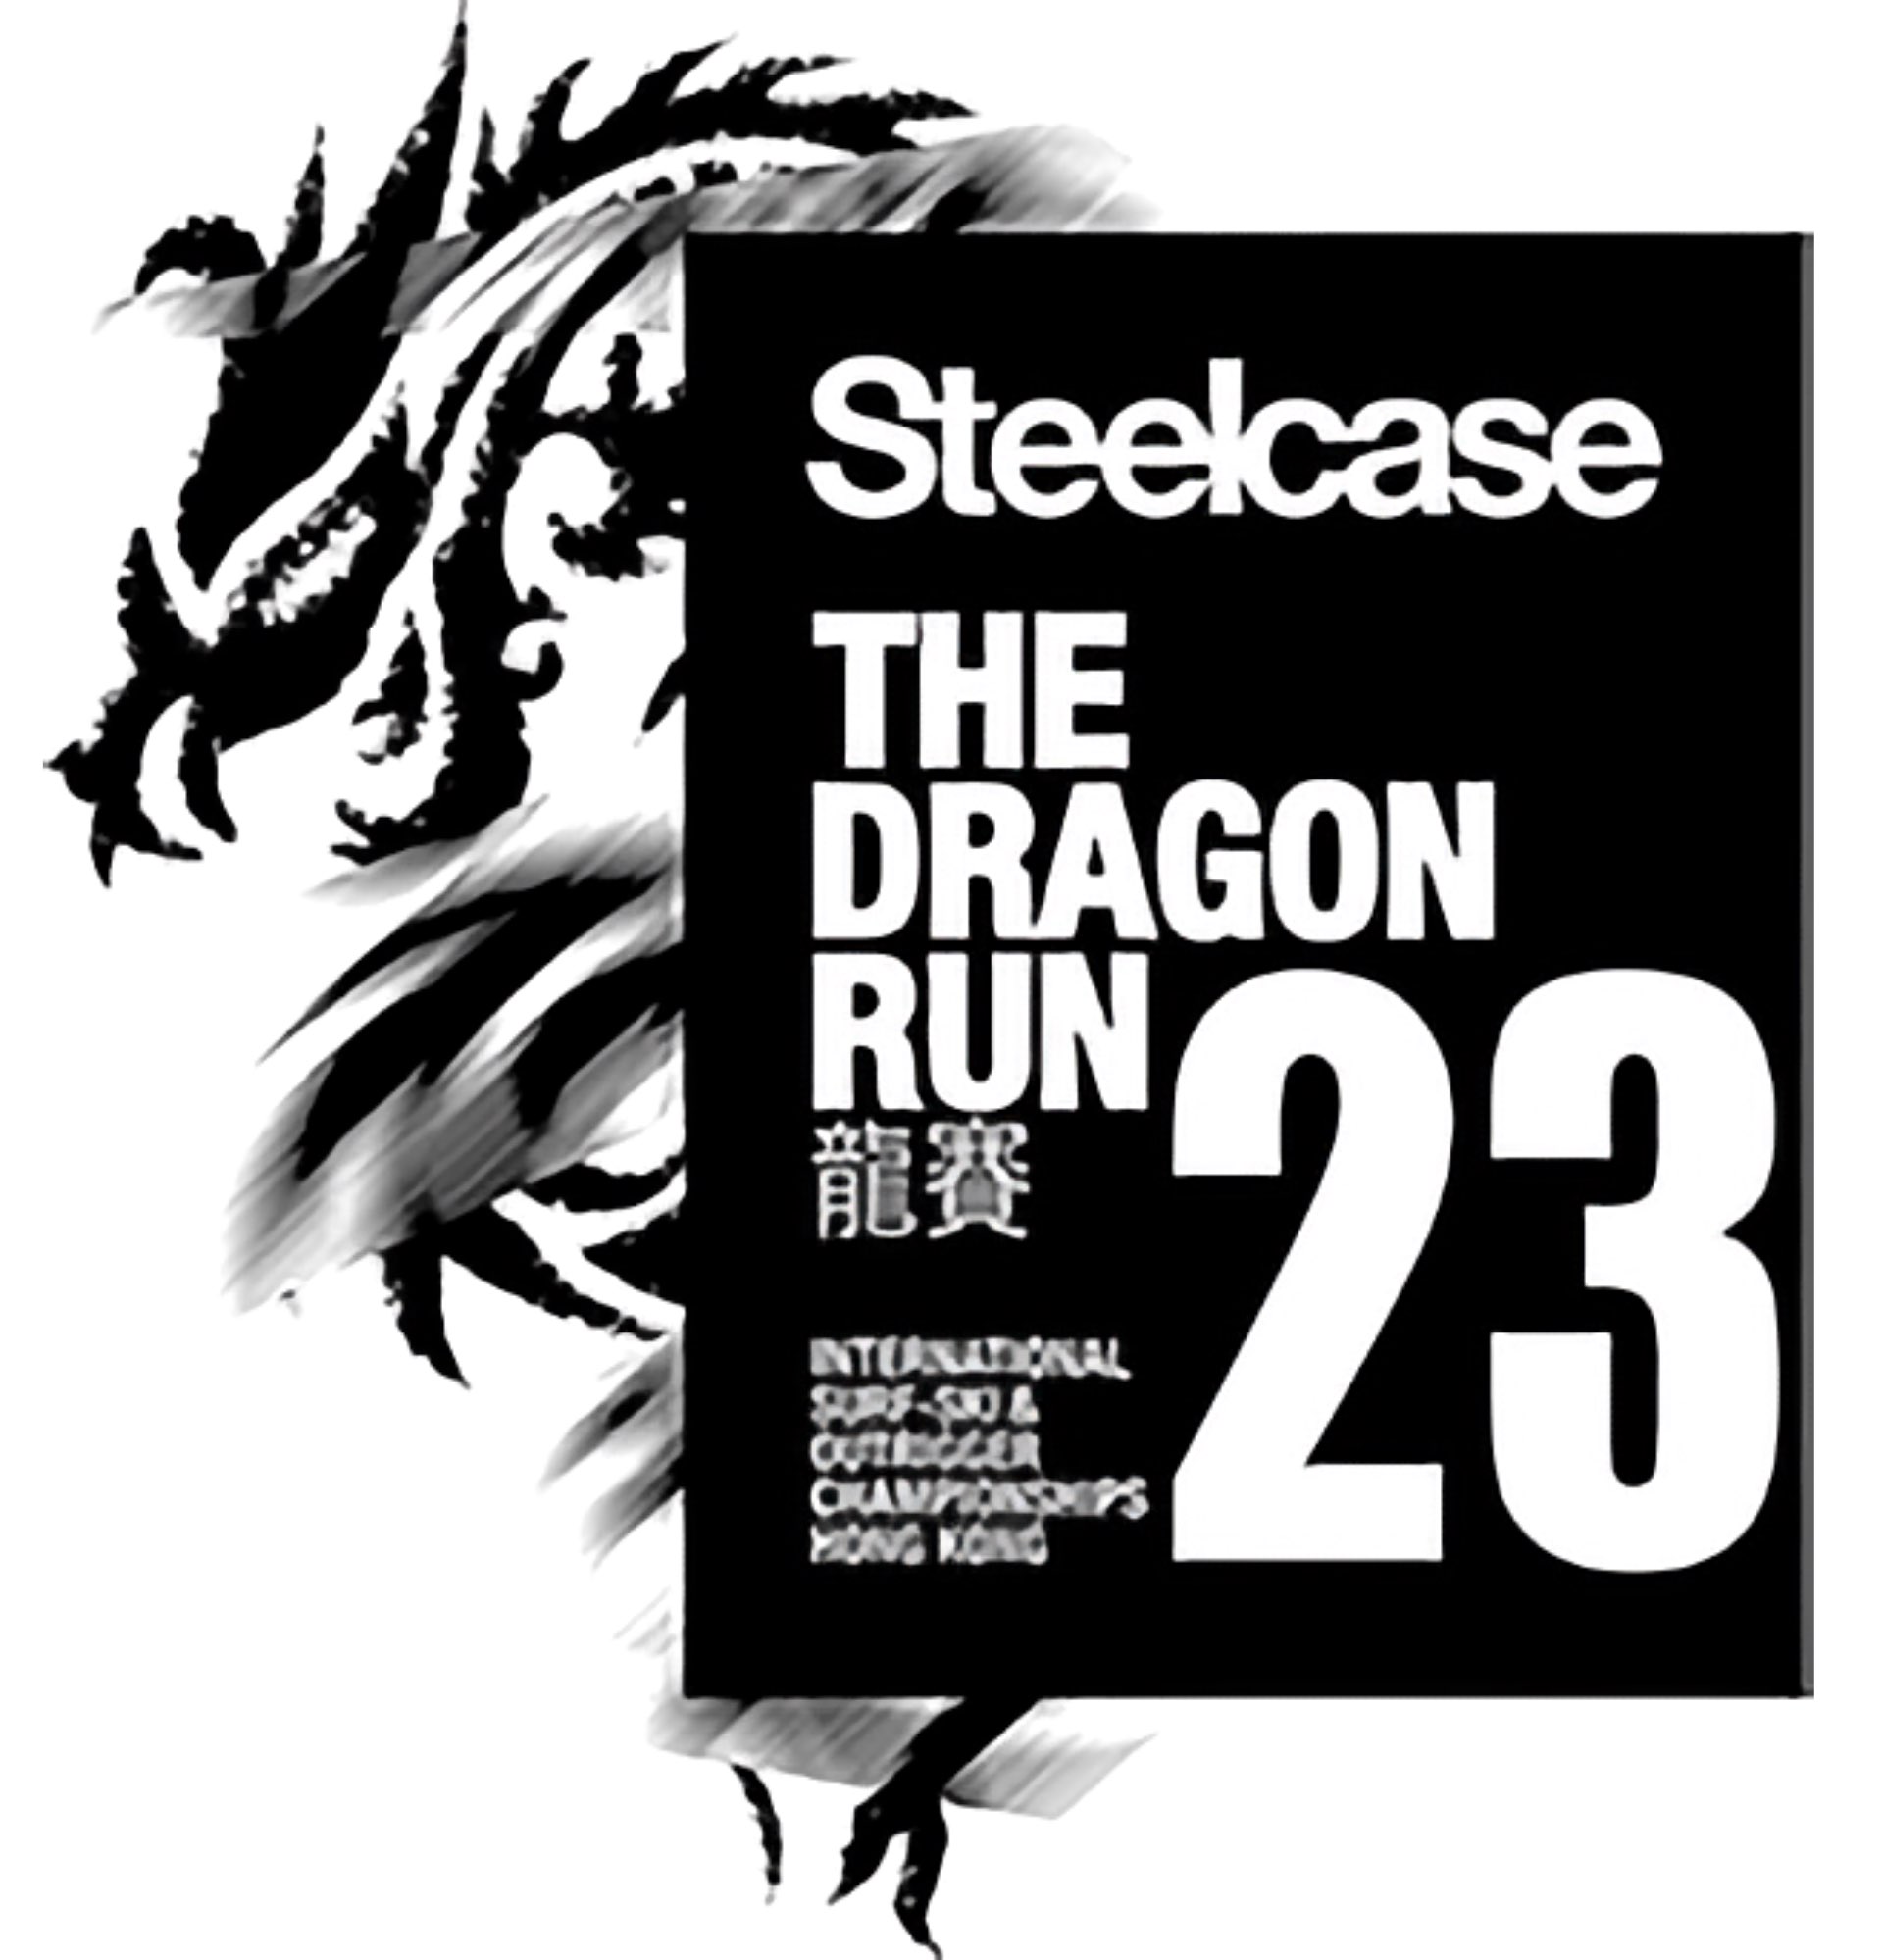 The Dragon Run